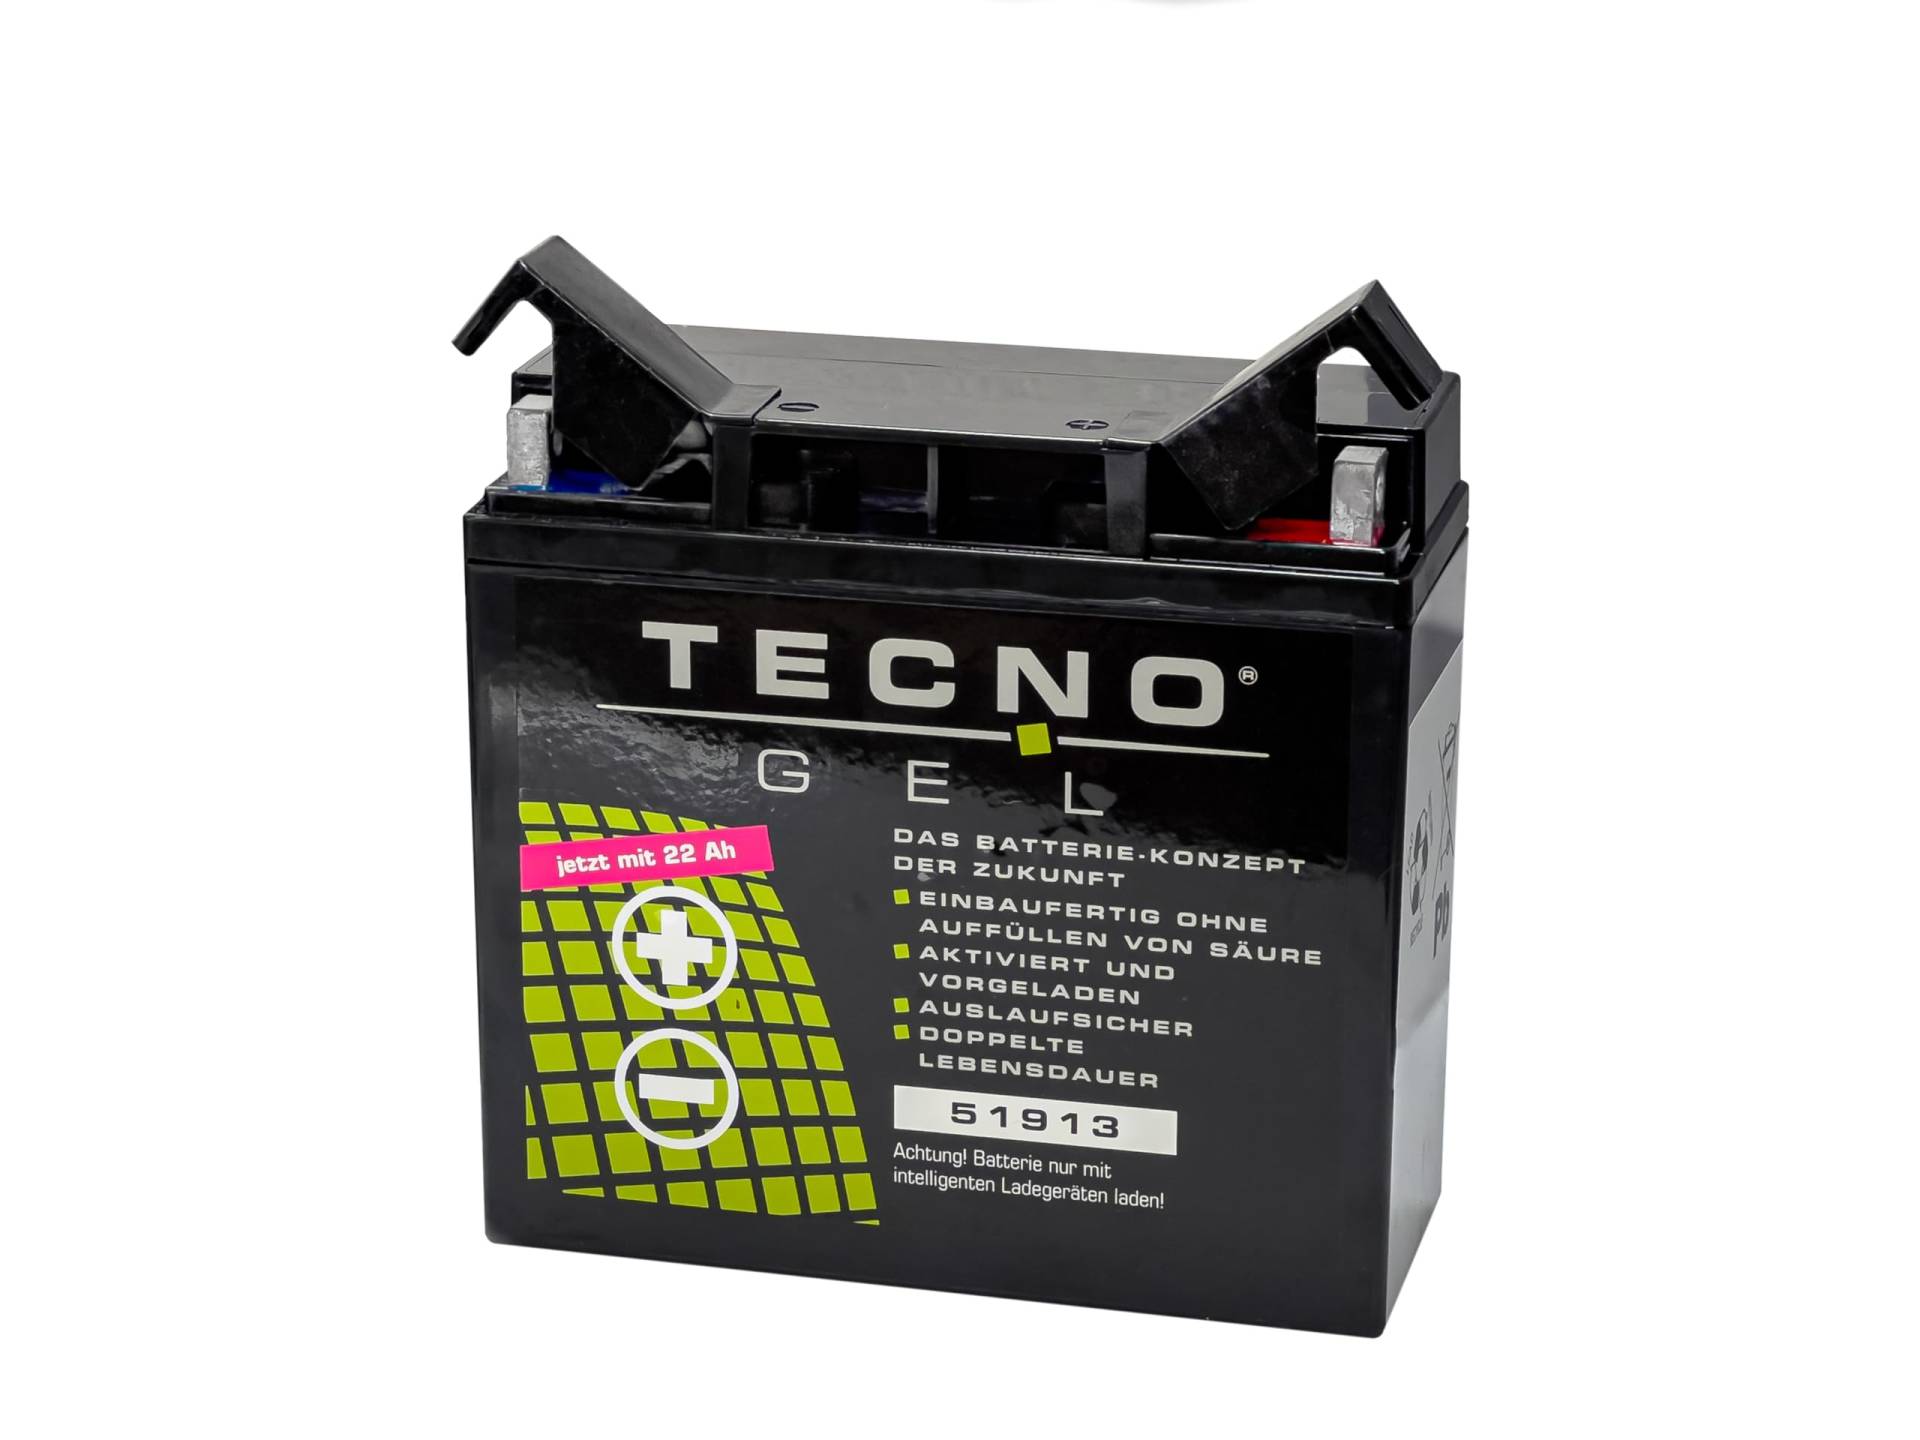 TECNO-GEL Motorrad-Batterie 51913 (51814) für BMW R 80/7 N,S 1977-1980, 12V Gel-Batterie 22 Ah, 186x82x171 mm von Wirth-Federn